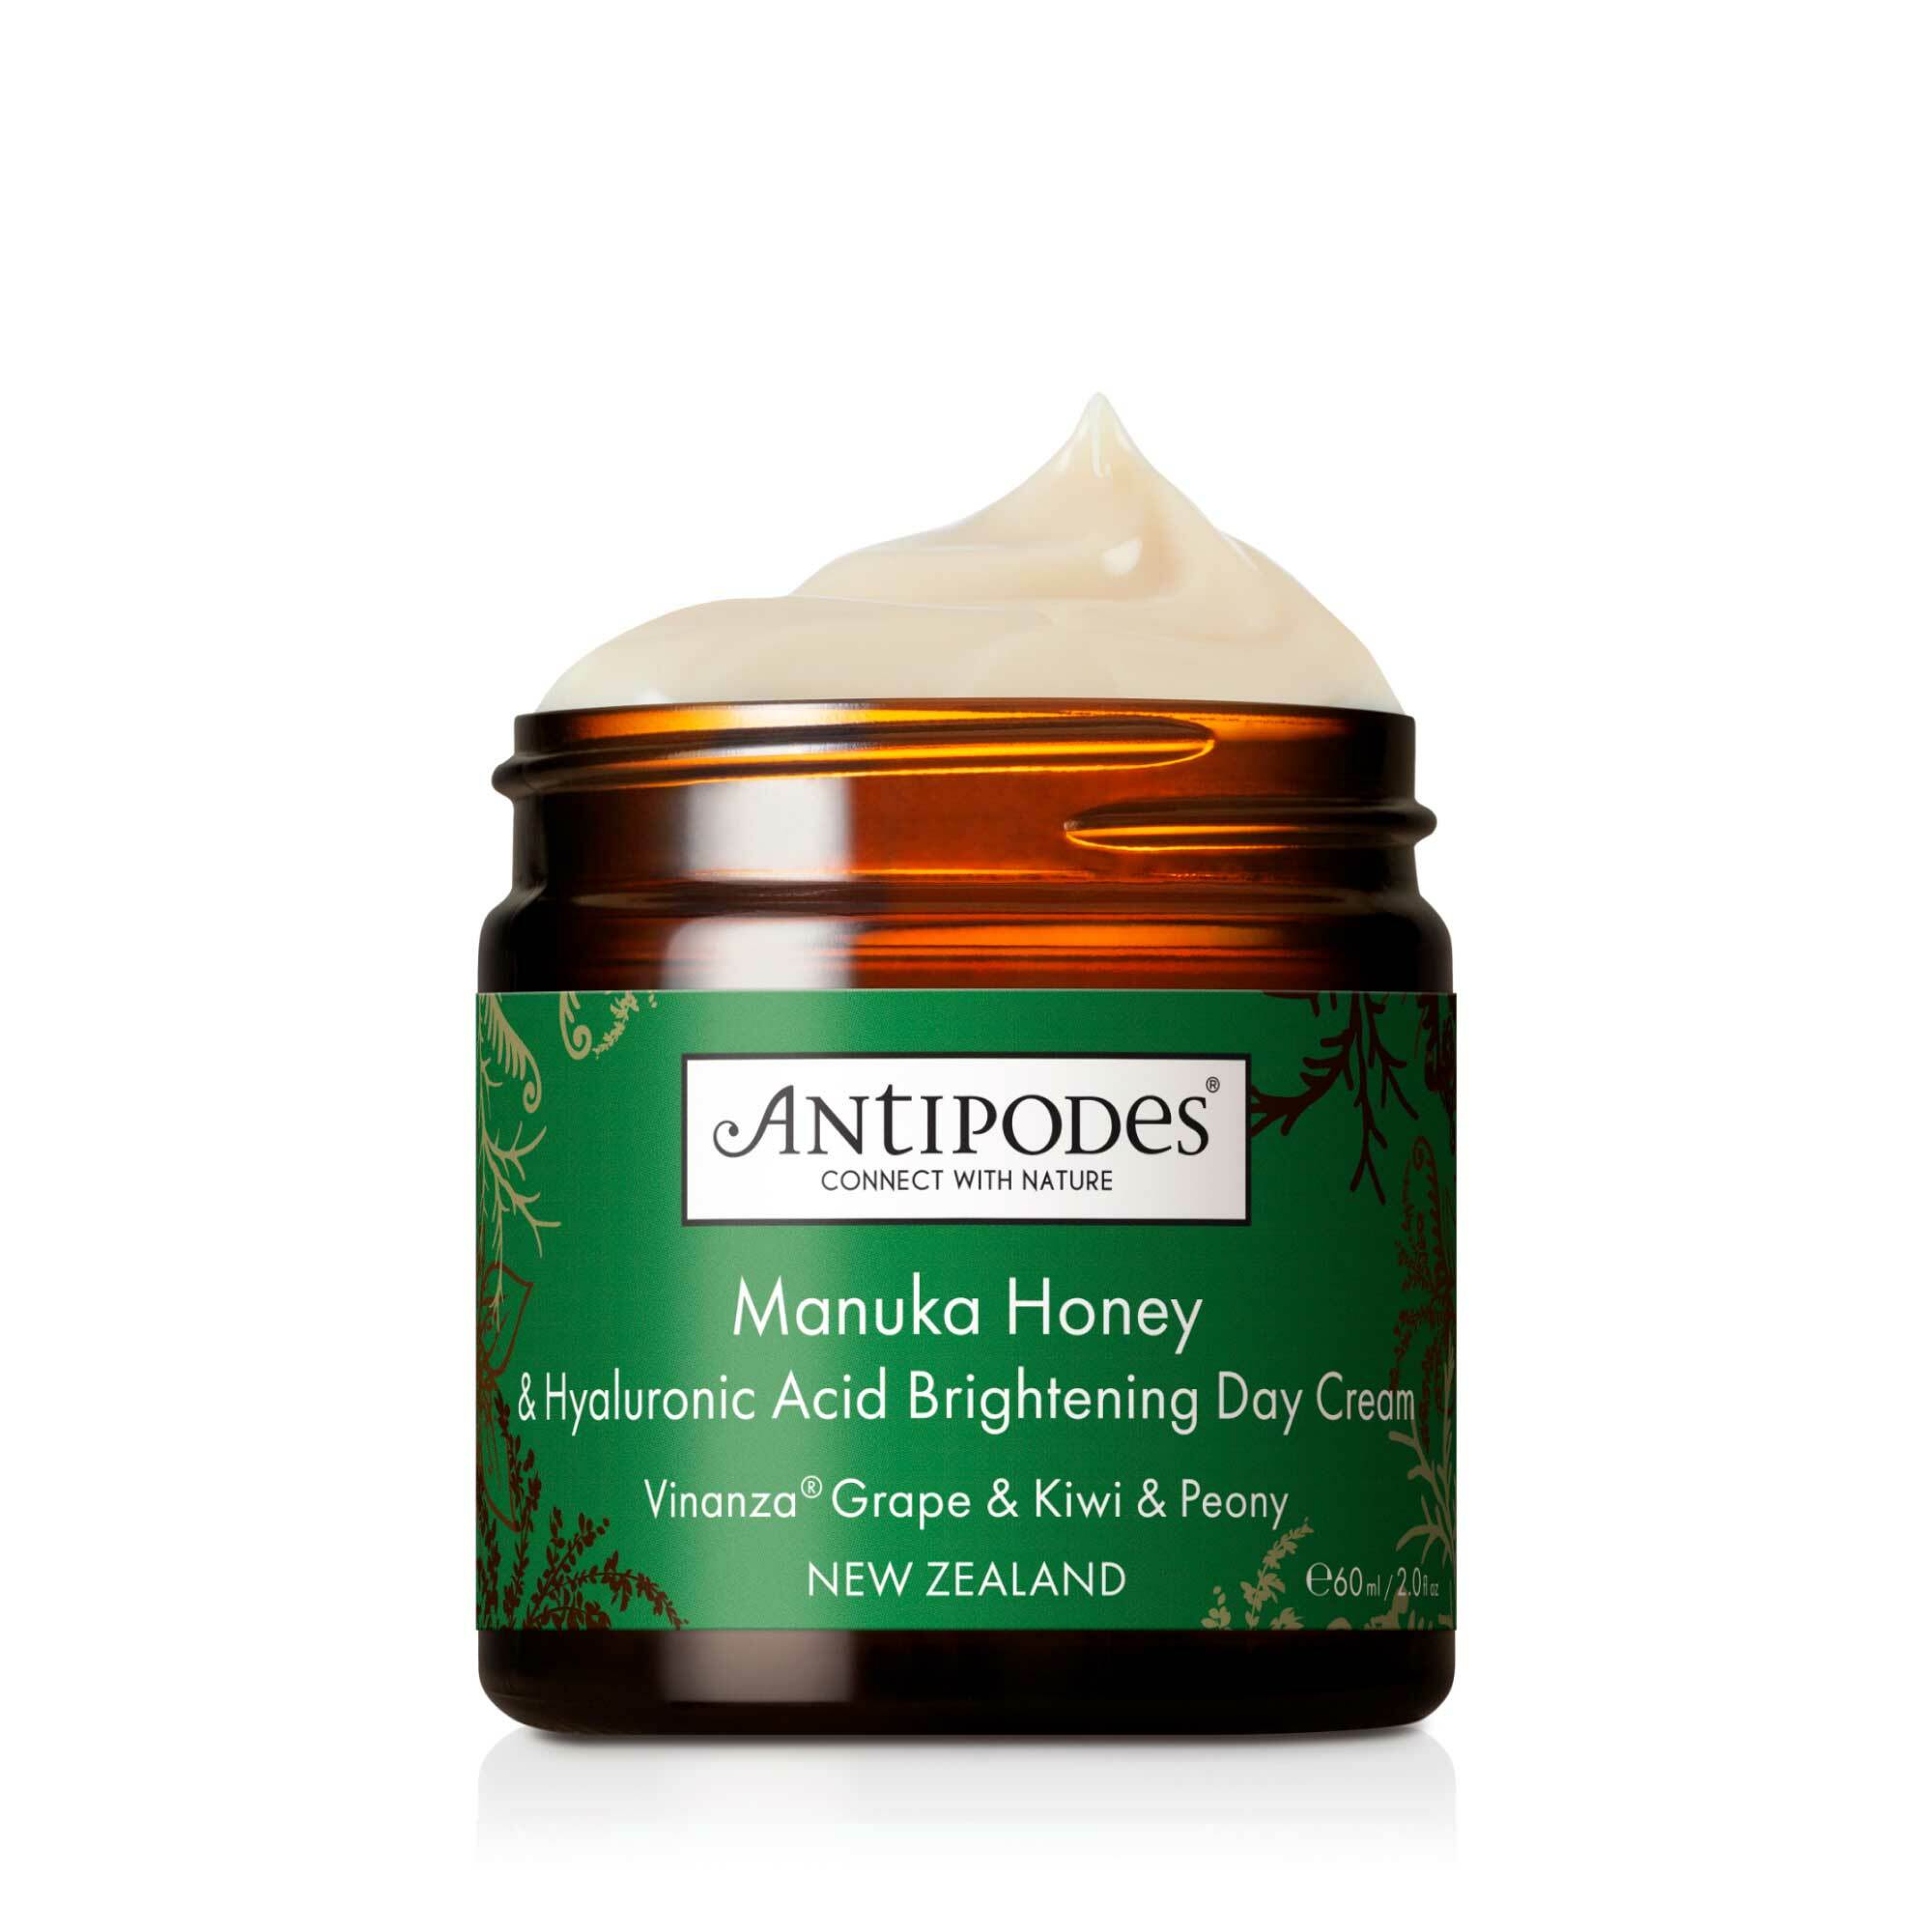 Antipodes Denní rozjasňující pleťový krém Manuka Honey (Hyaluronic Acid Brightening Day Cream) 60 ml